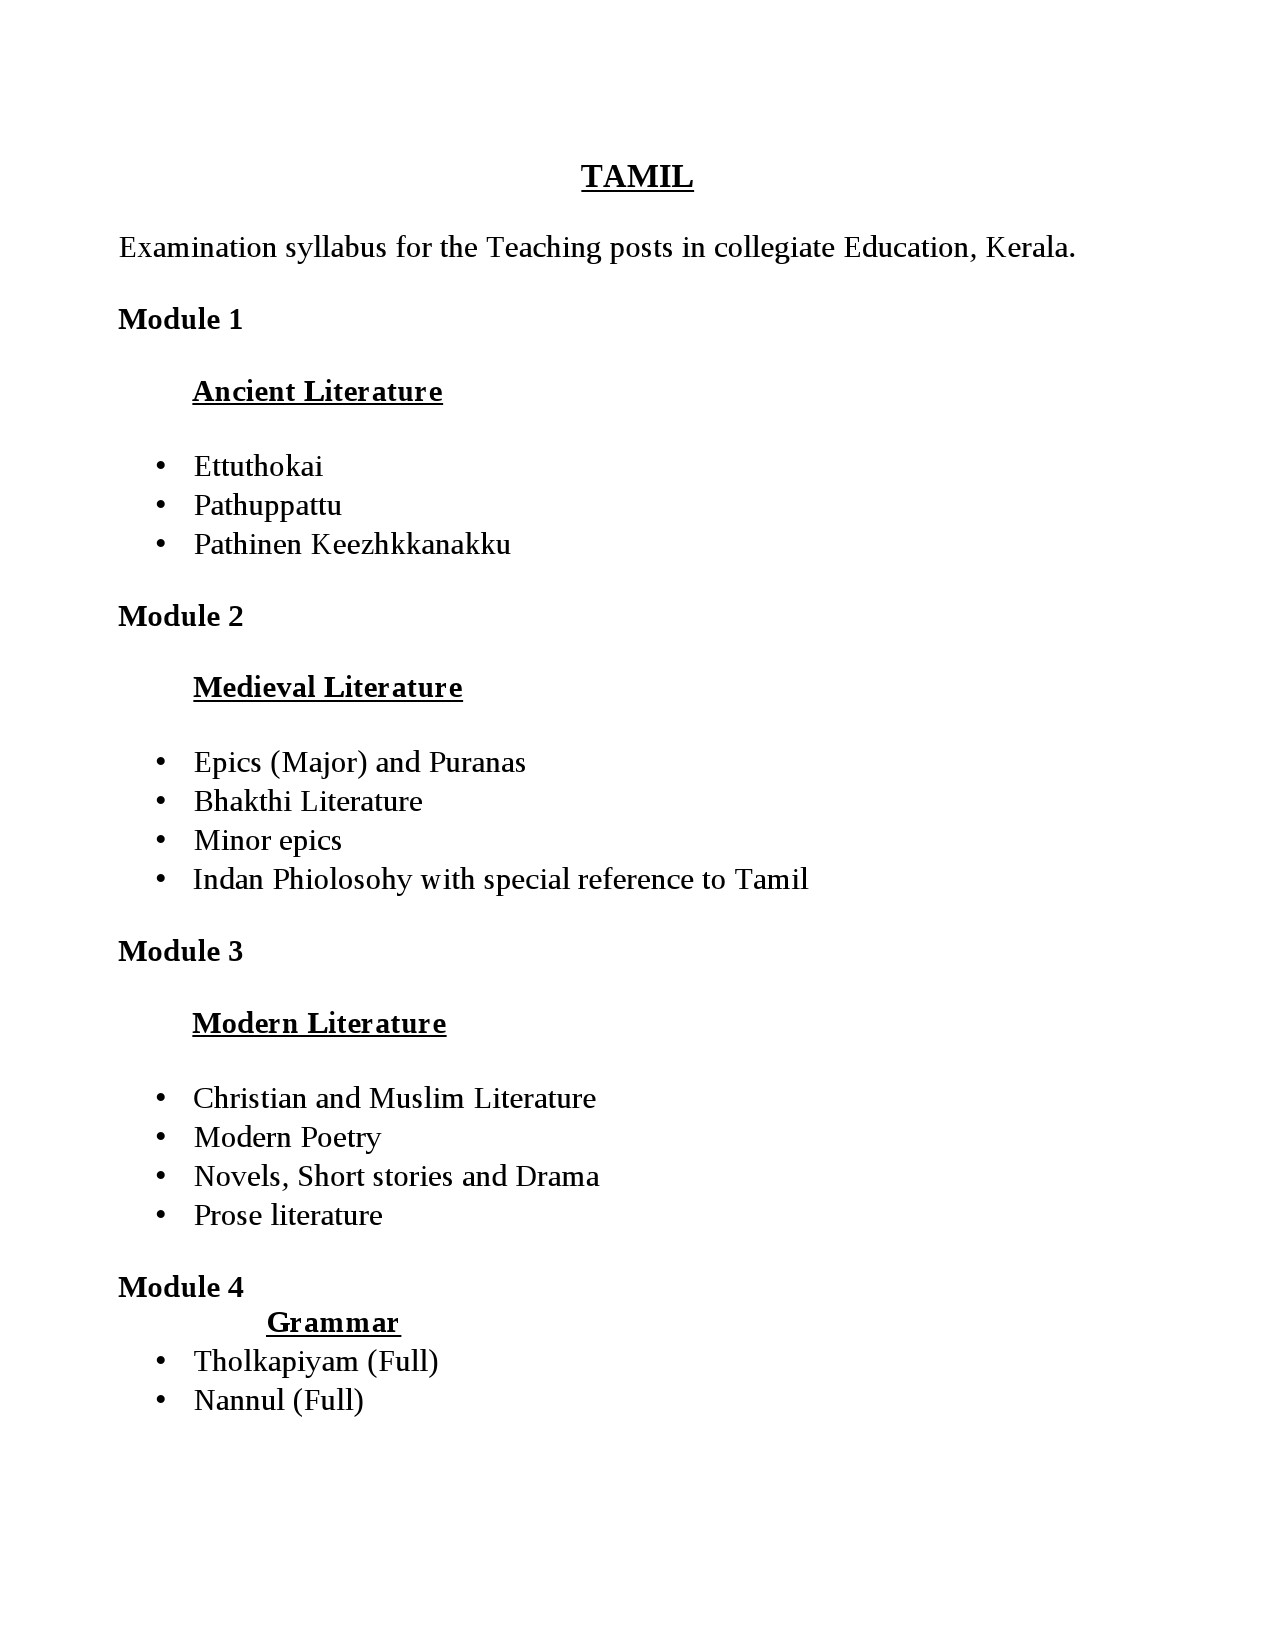 Tamil Teaching Posts Kerala PG Level Exam Syllabus - Notification Image 1